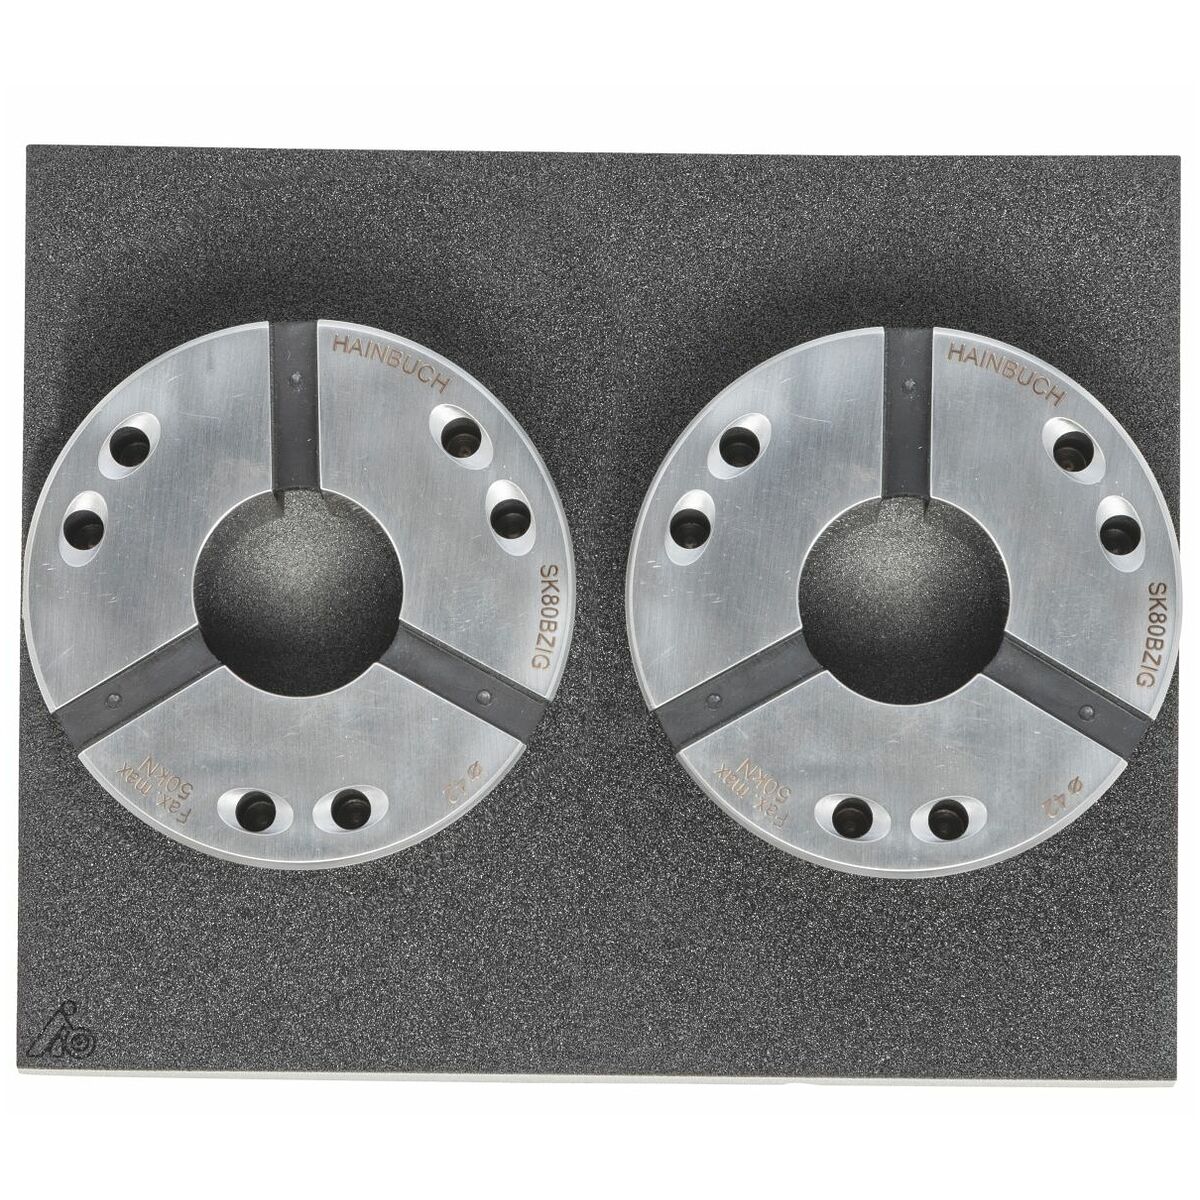 Soportes de espuma rígida vacíos para discos de sujeción Hainbuch